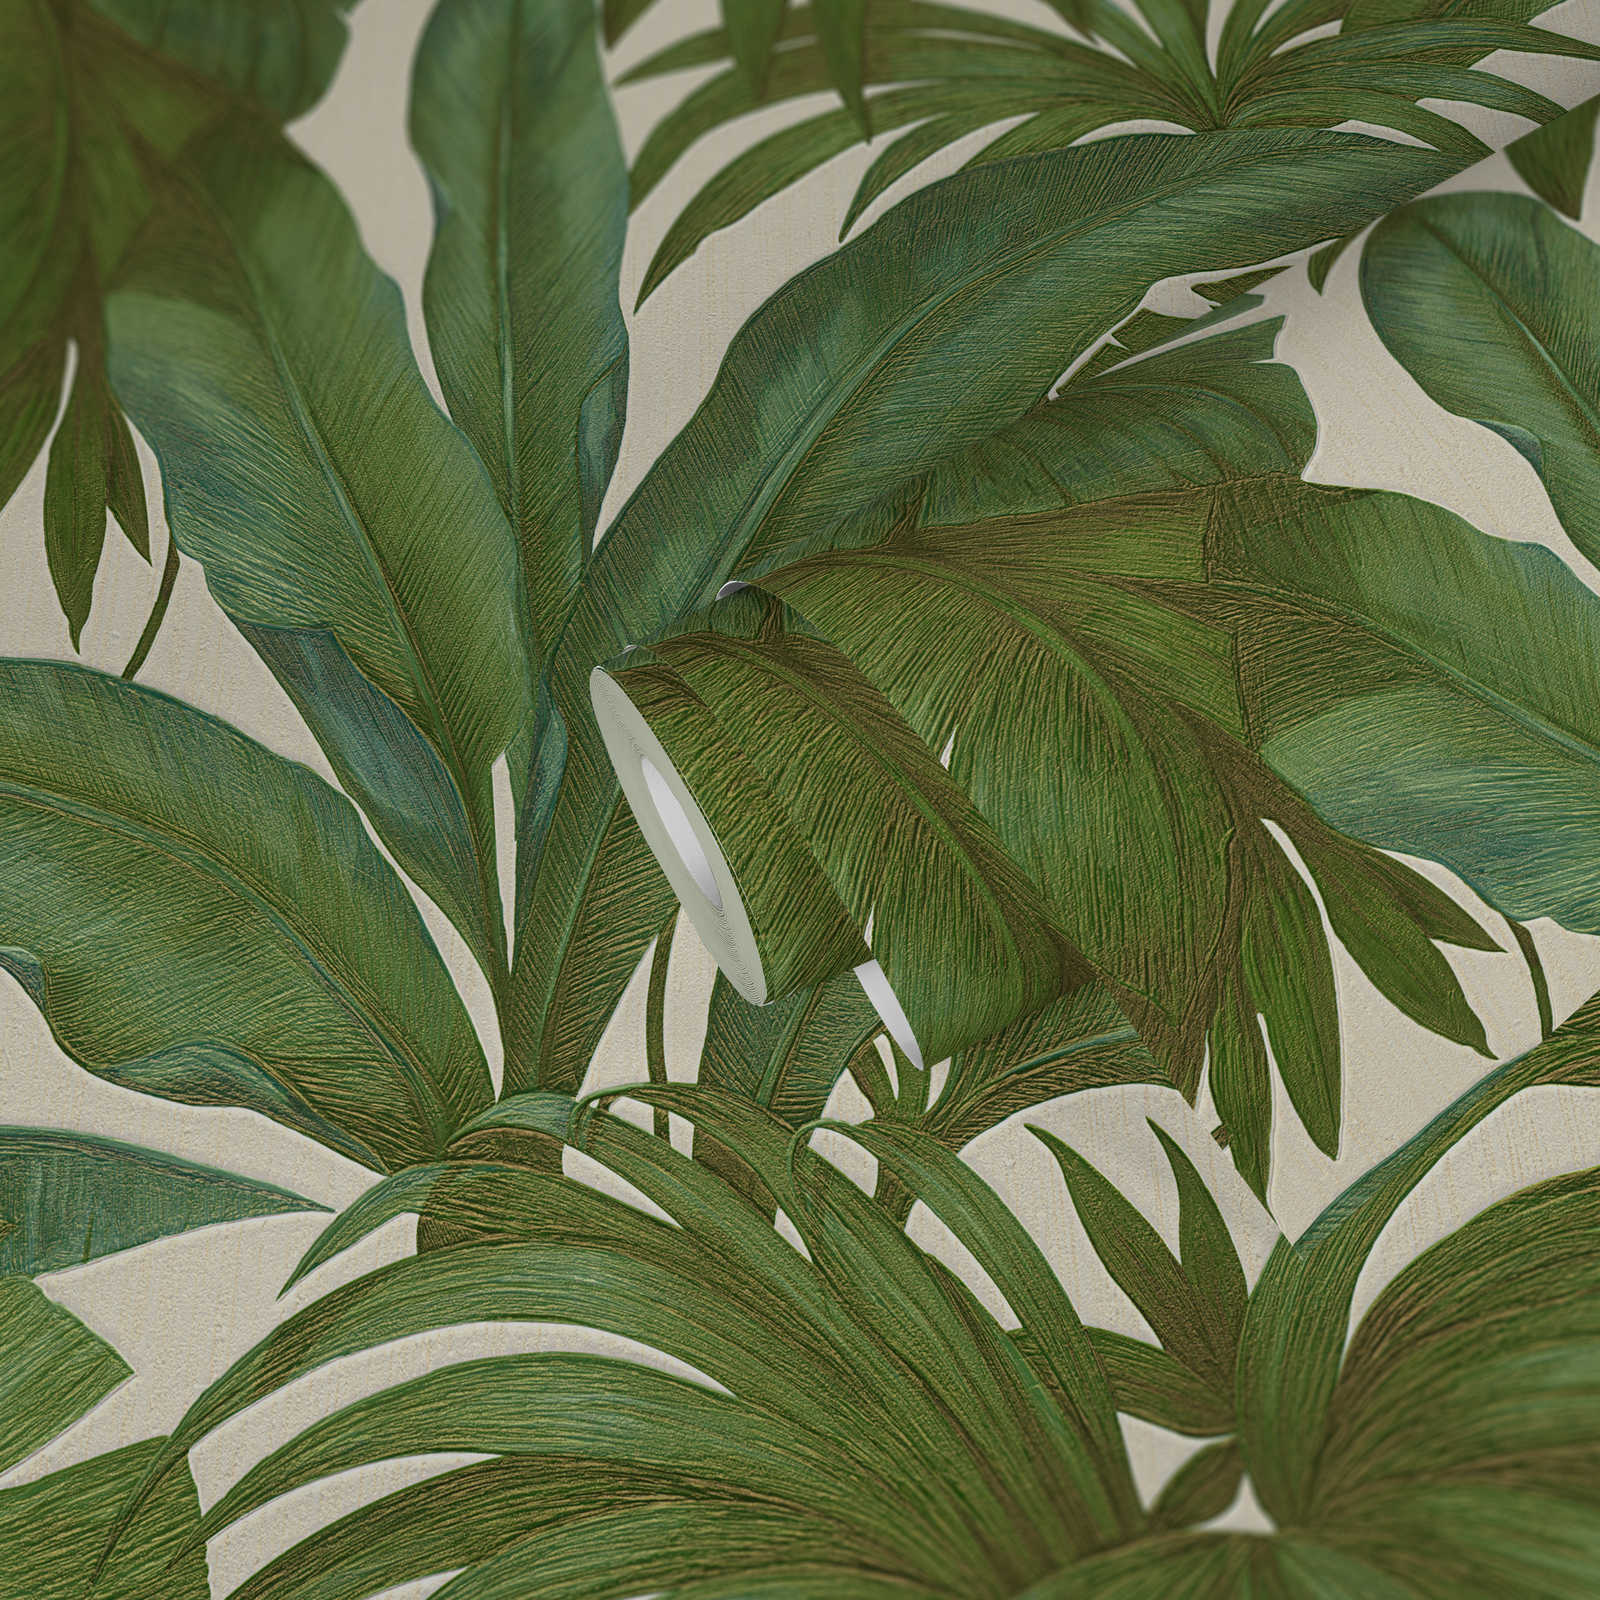             Papel pintado VERSACE motivo palmeras - beige, verde, metálico
        